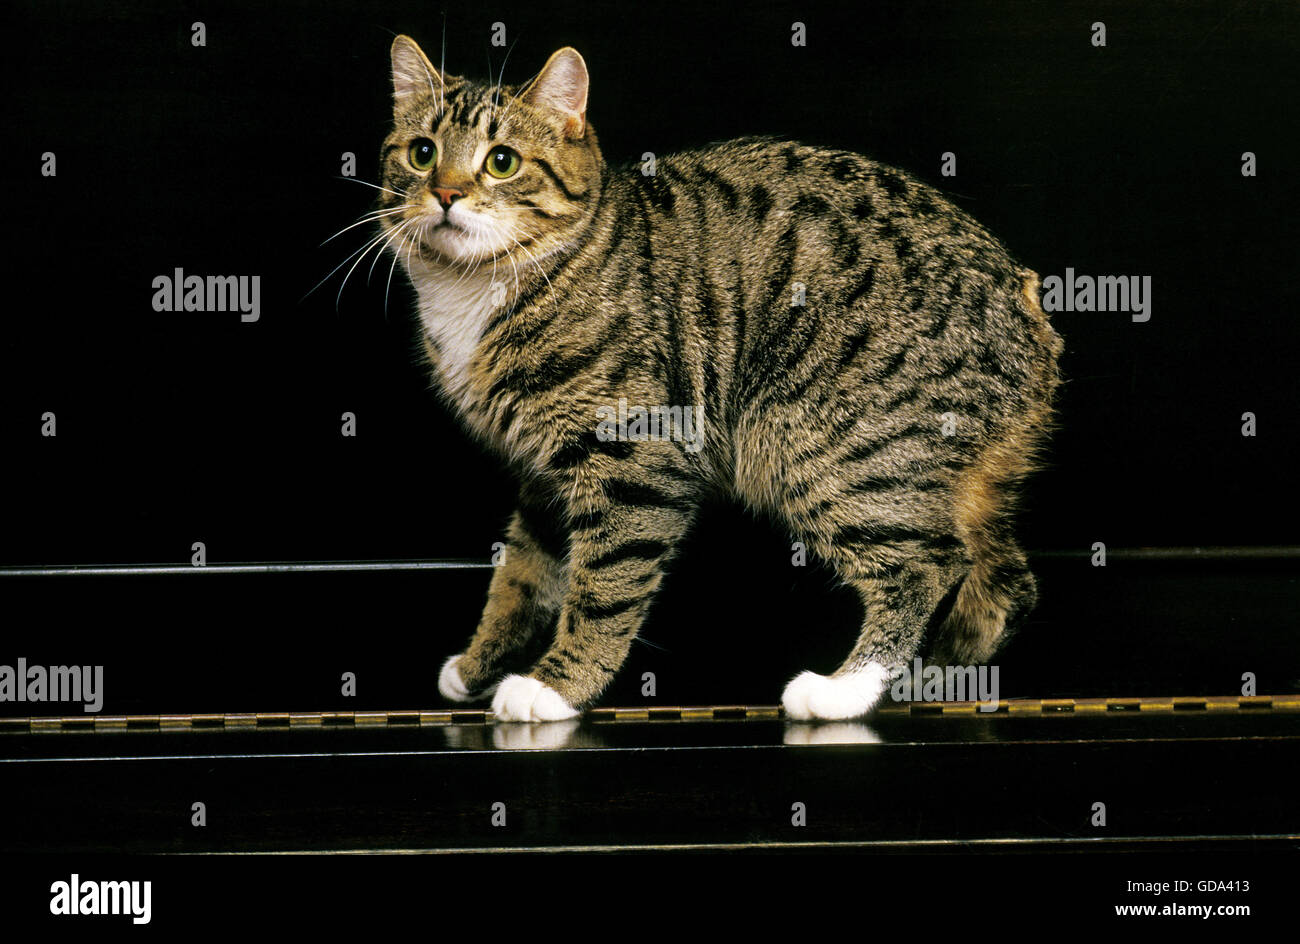 Manx Katze, eine Katzenrasse elf Tail, Erwachsenen am Klavier  Stockfotografie - Alamy